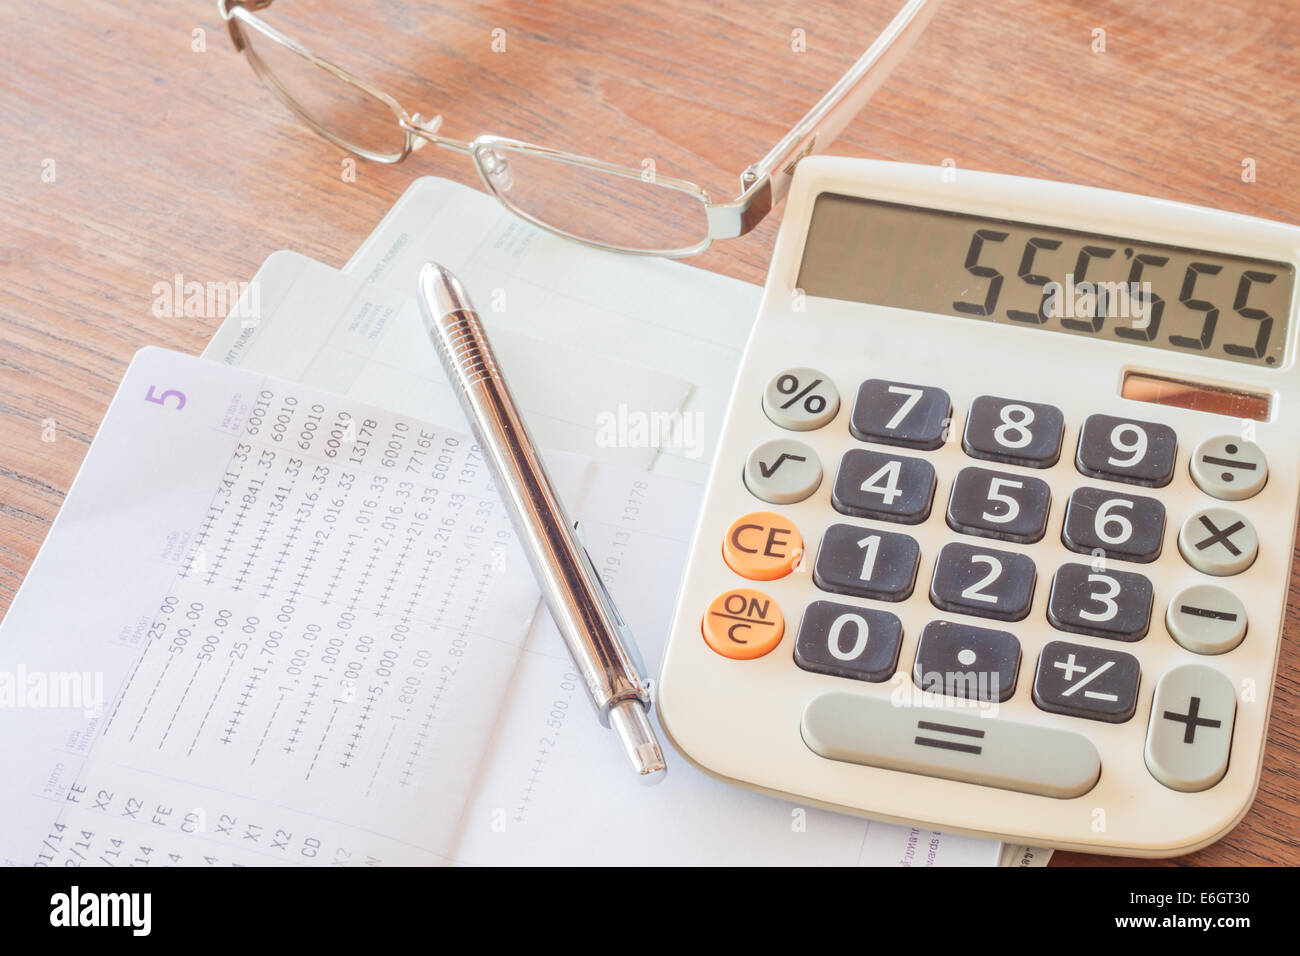 Calcolatrice, penna e occhiali sul conto bancario libretto, stock photo Foto Stock